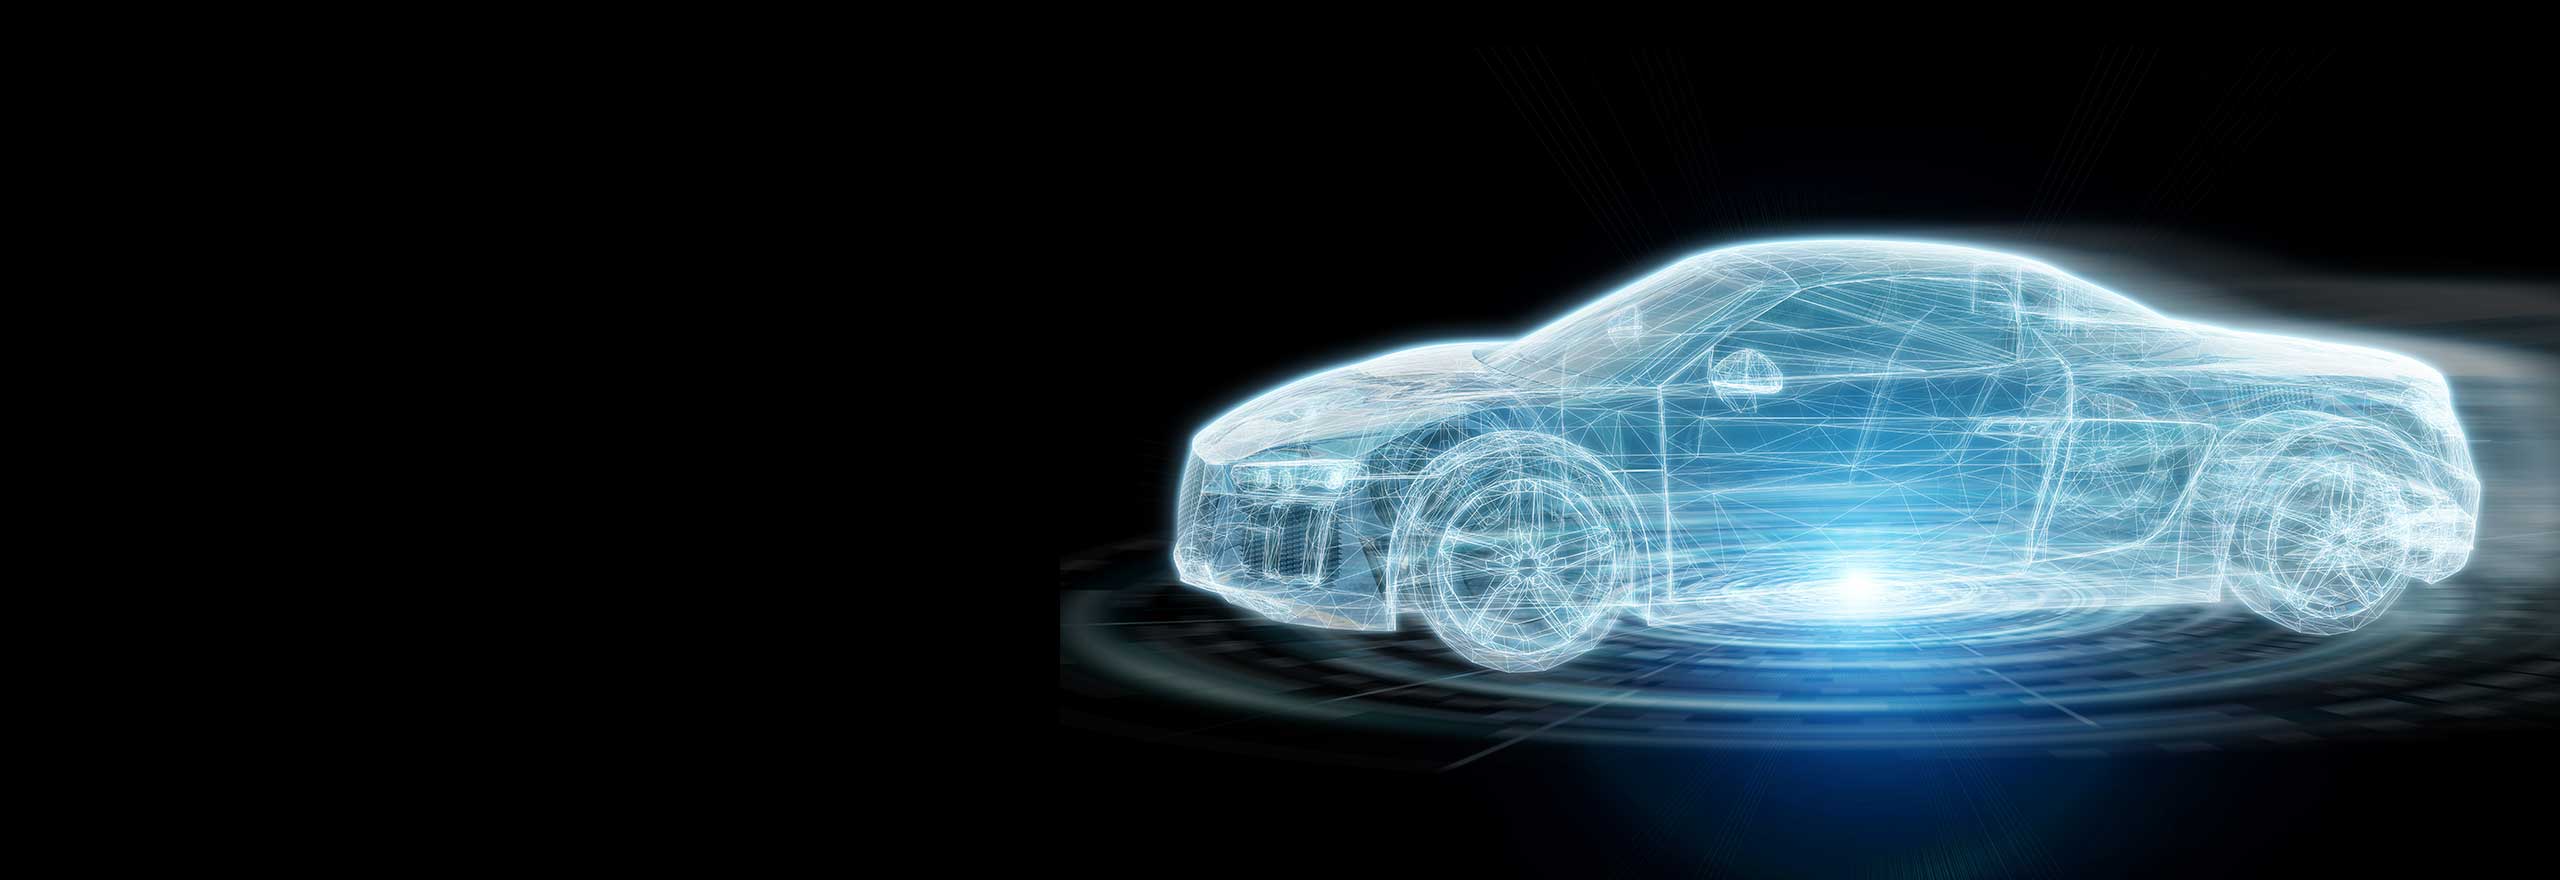 Digitales Modell des Äußeren eines Autos für eine Simulation